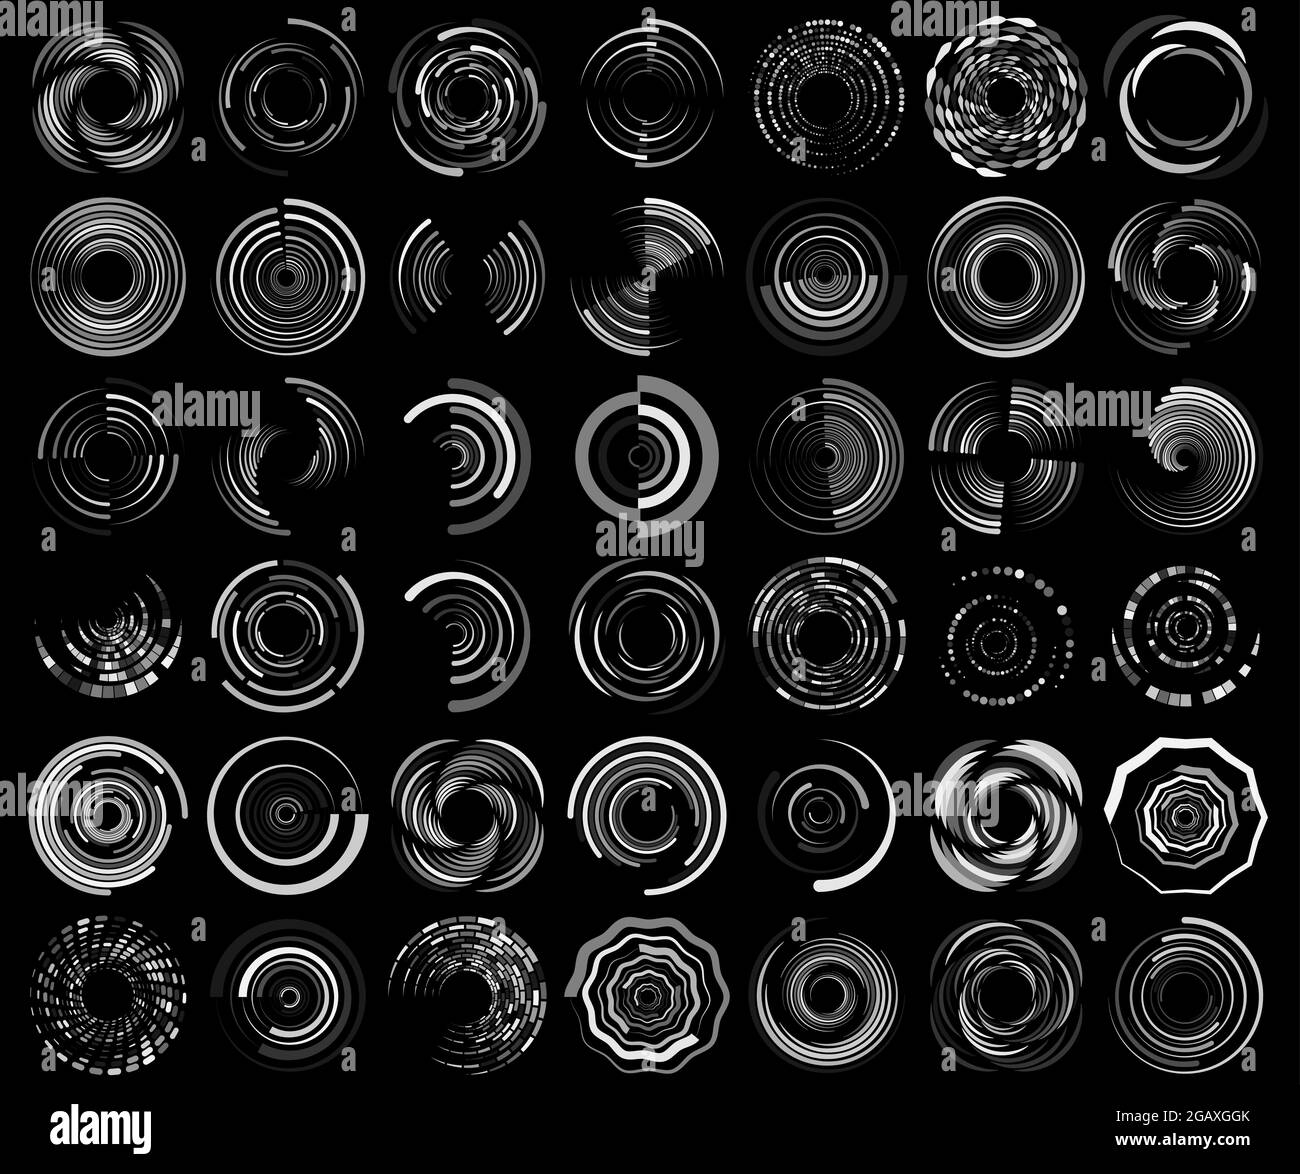 Spirale, Wirbel, Wirbel, Wirbelsymbol, Form. Konzentrische Kreise, Ringe. Abstrakte geometrische Formen mit Rotationseffekt – Stock-Vektor-Illustration, Clip Stock Vektor